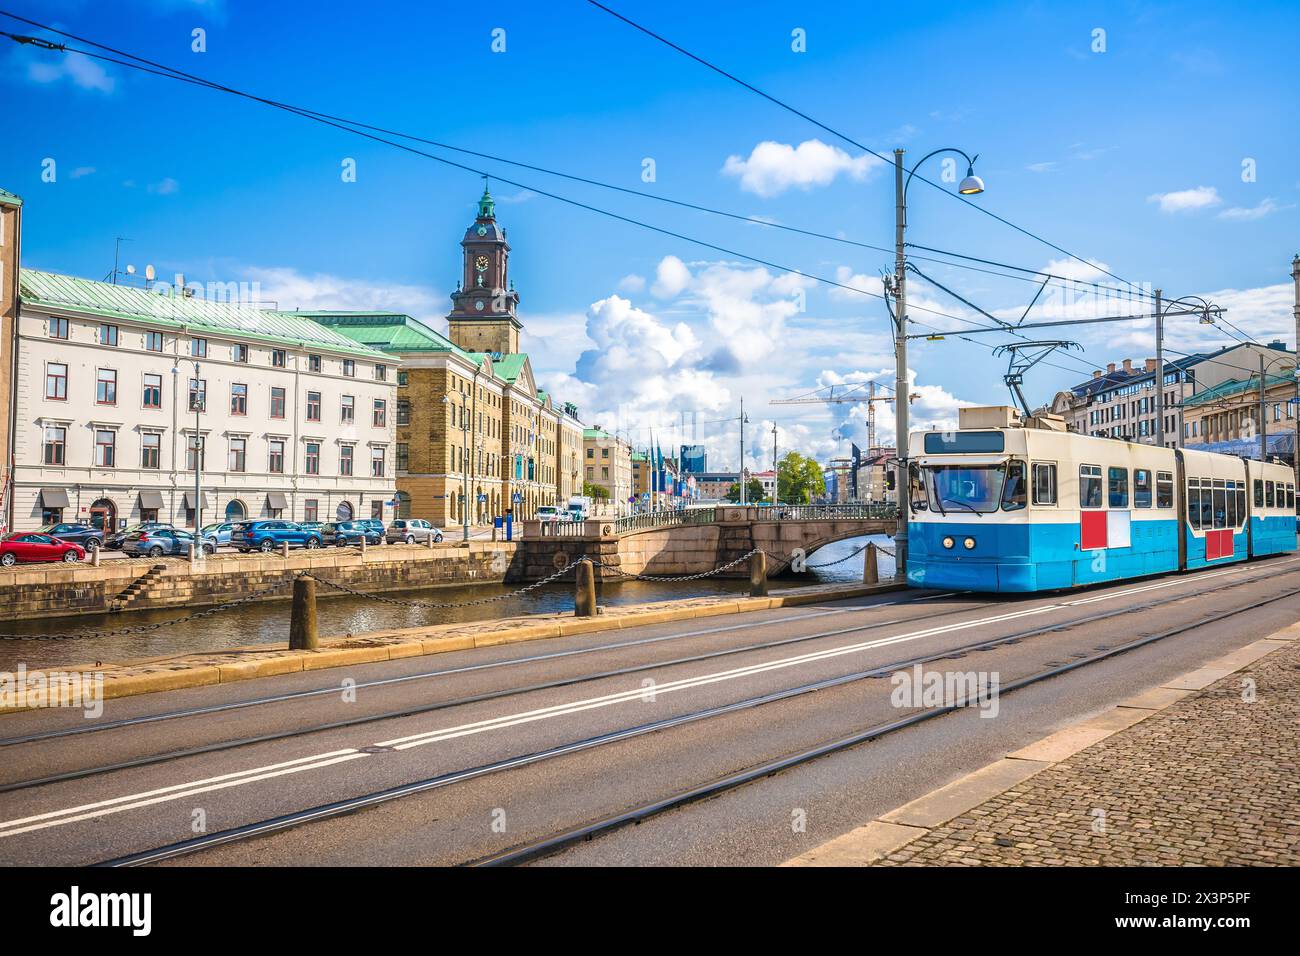 Ville de Gothenburg architecture et vue sur le tramway, Vastra Gotaland County of Sweden Banque D'Images